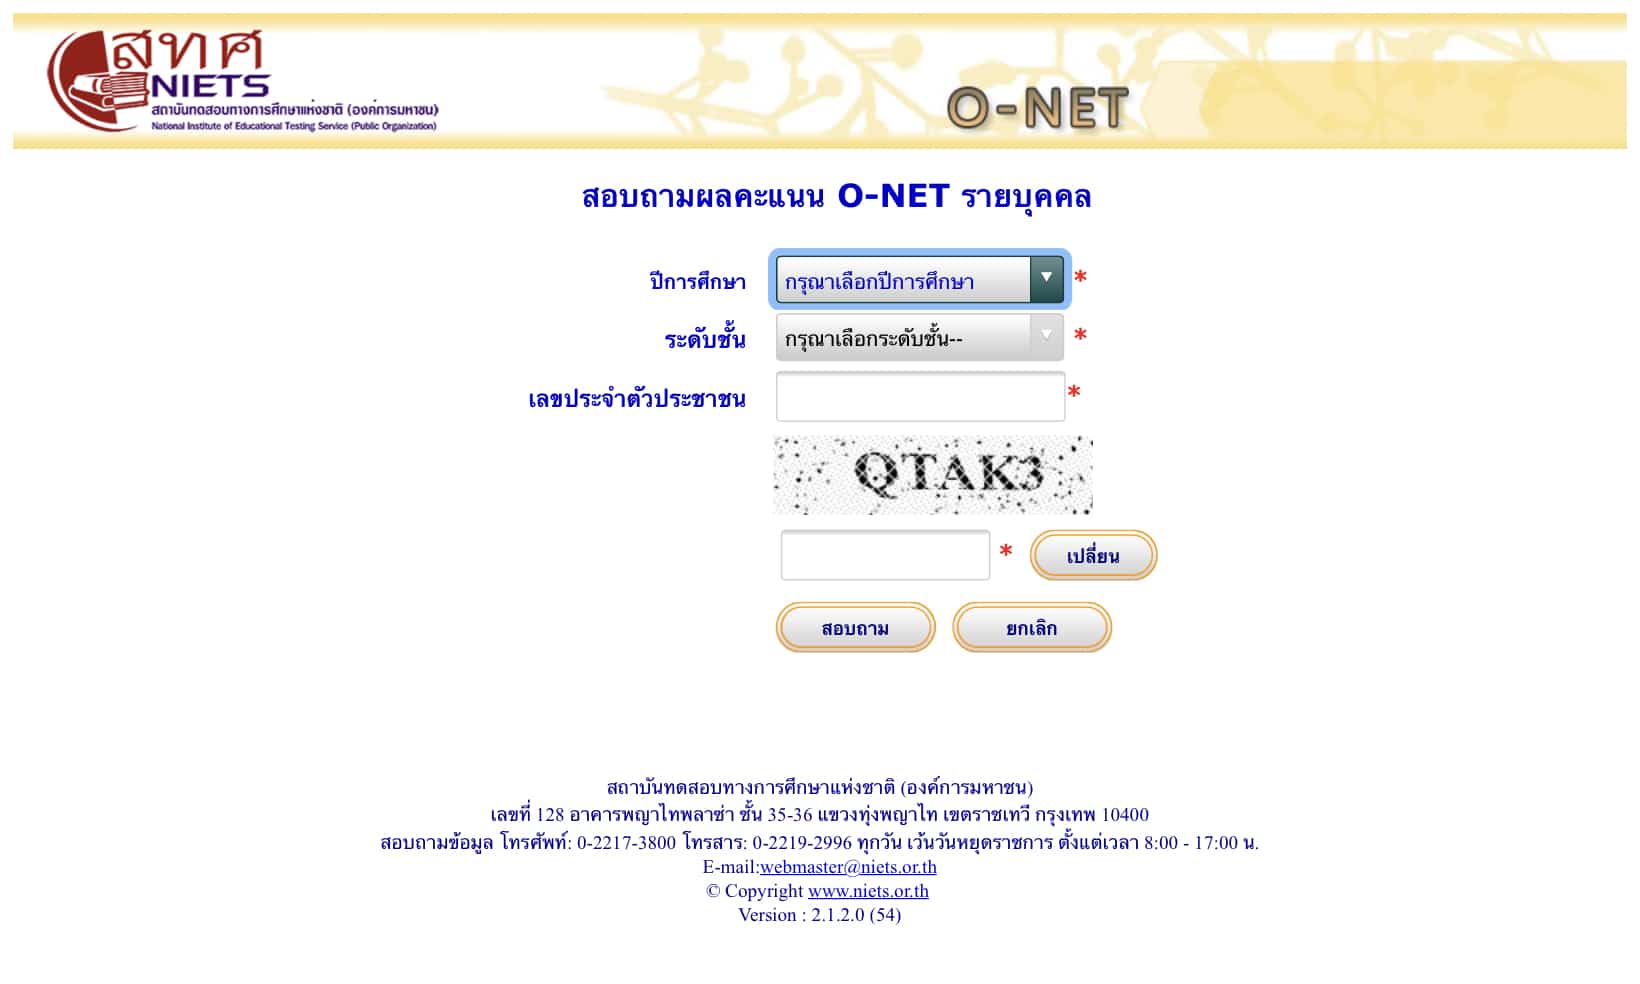 สทศ.ประกาศผลสอบ O-NET ชั้น ป.6 ปีการศึกษา 2563